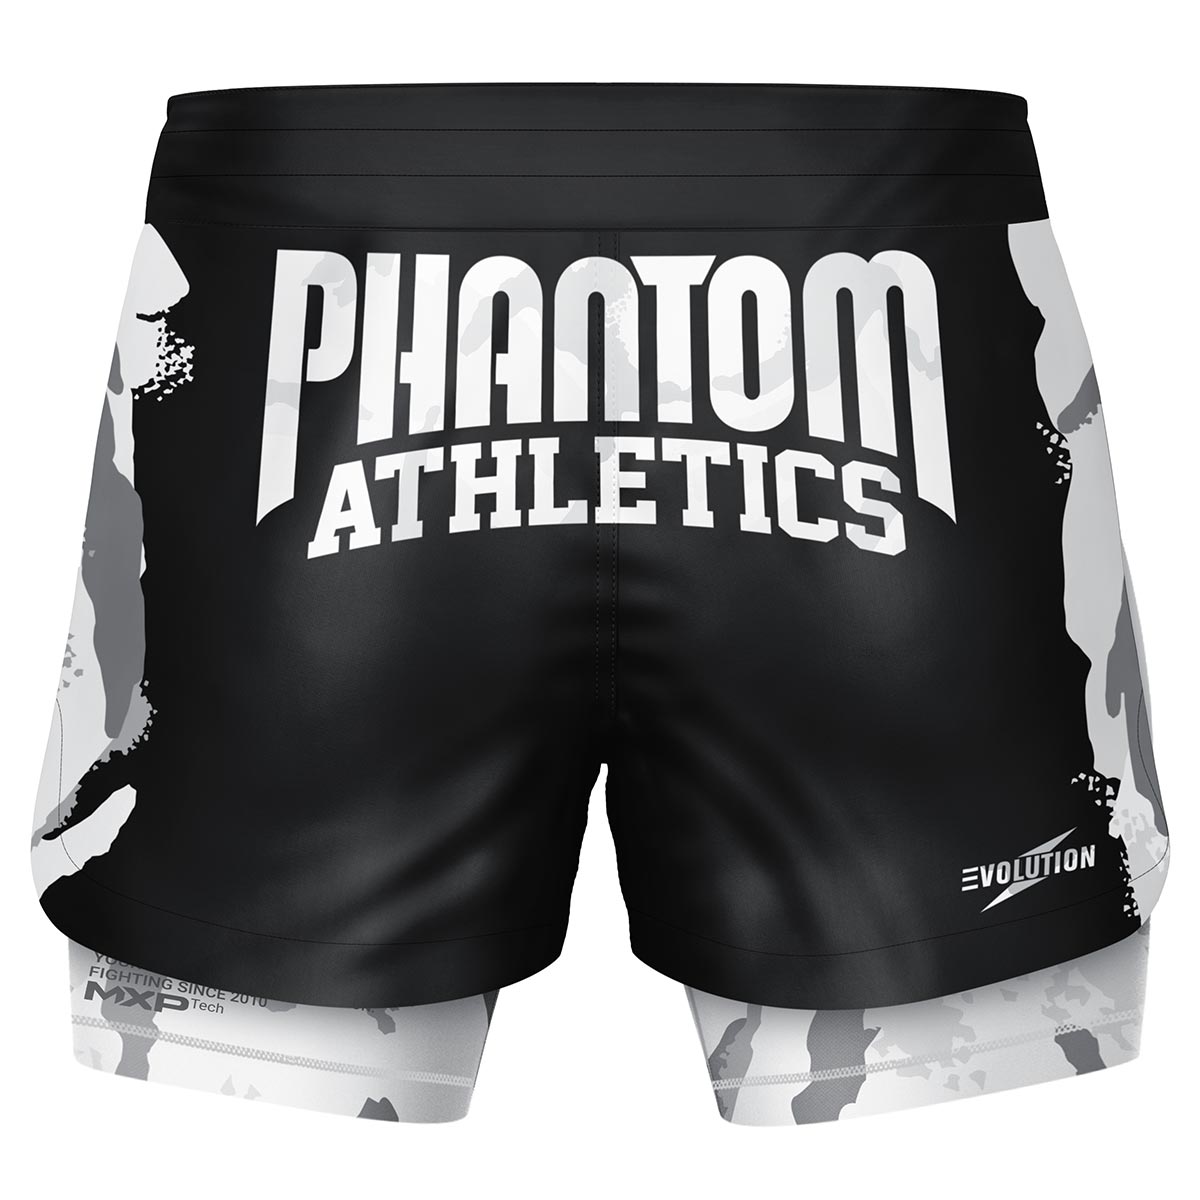 Phantom Fightshorts Fusion 2in1. Ultimative Shorts für deinen Kampfsport mit integrierter Compression Shorts. Ideal für MMA, BJJ, Ringen, Grappling oder Muay Thai. In schwarz mit Camo Design.